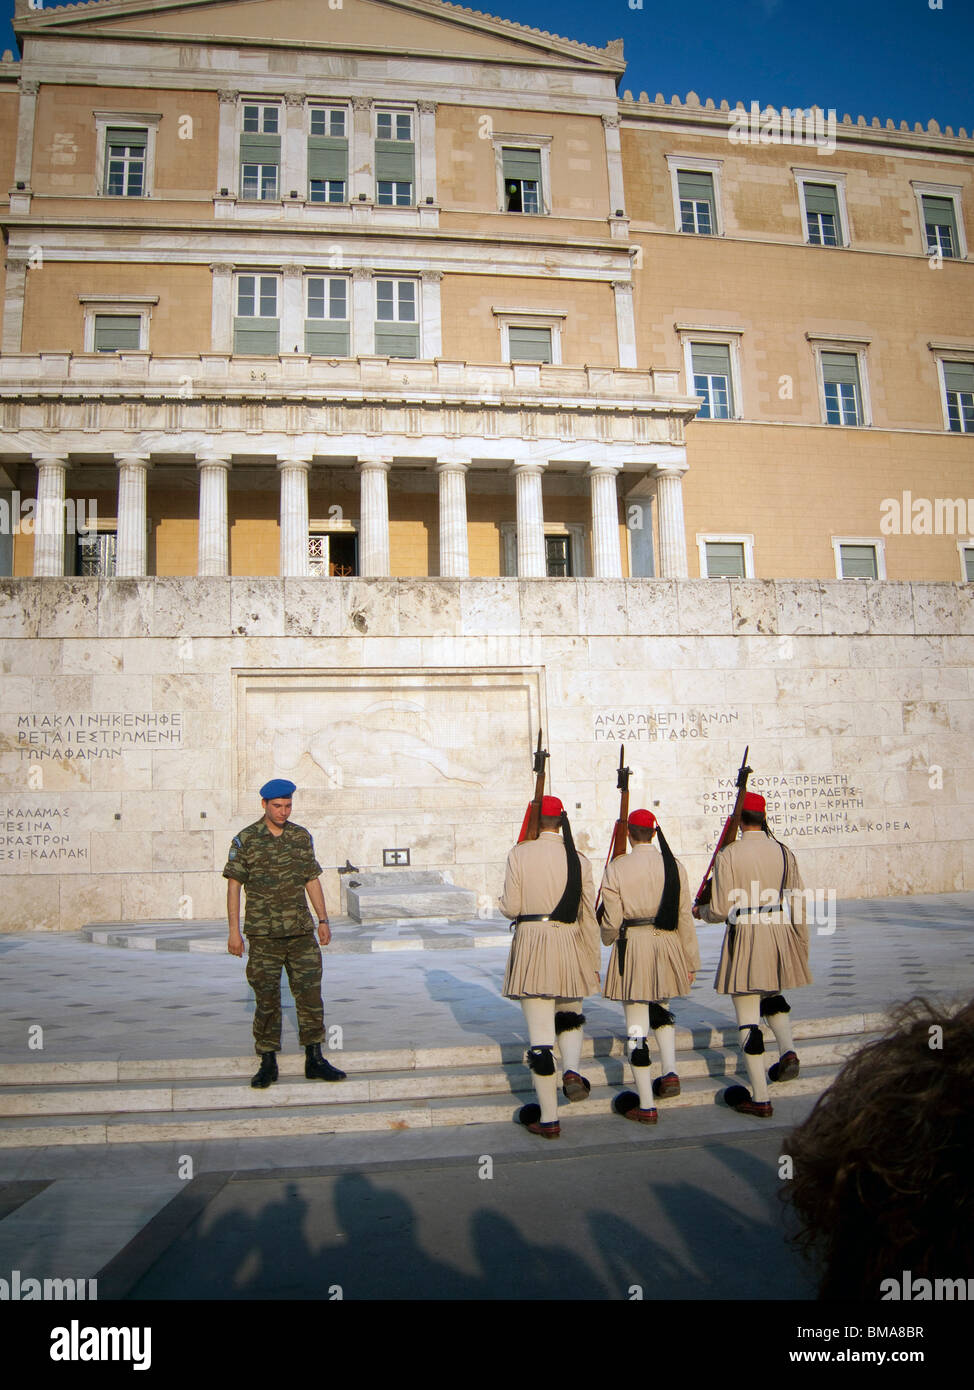 Athènes, Grèce. Les gardes Evzone sur la Tombe du Soldat inconnu. Bâtiment du Parlement grec Banque D'Images